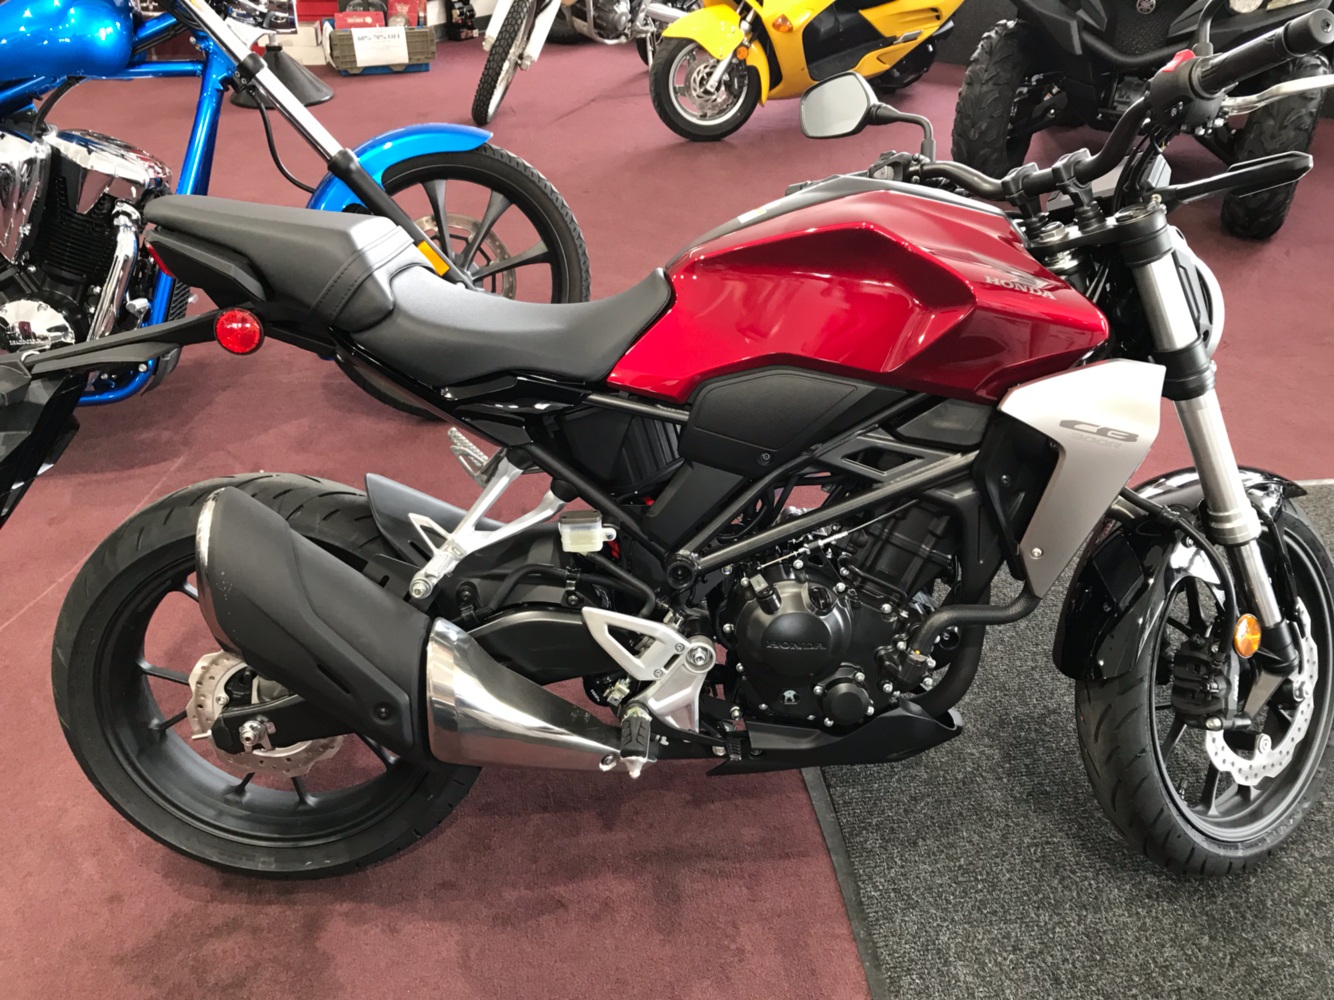 2019 Honda CB300R For Sale Belle Plaine, MN : 86379